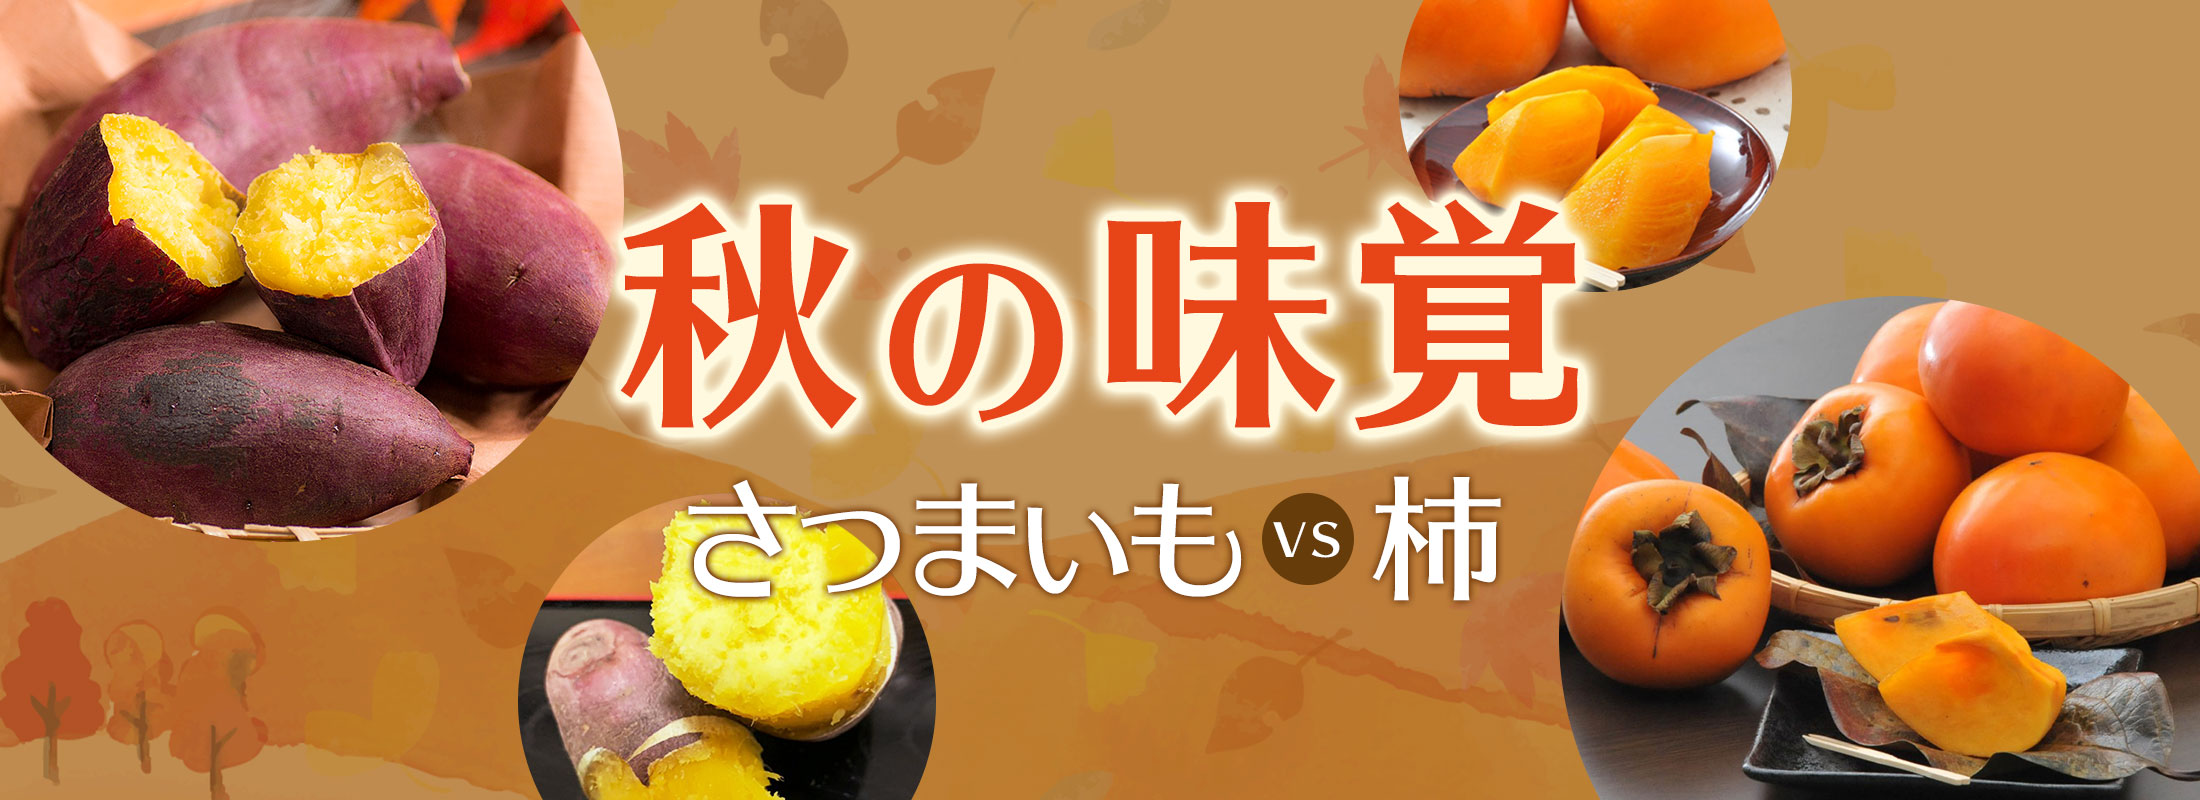 秋の味覚「さつまいも」vs「柿」